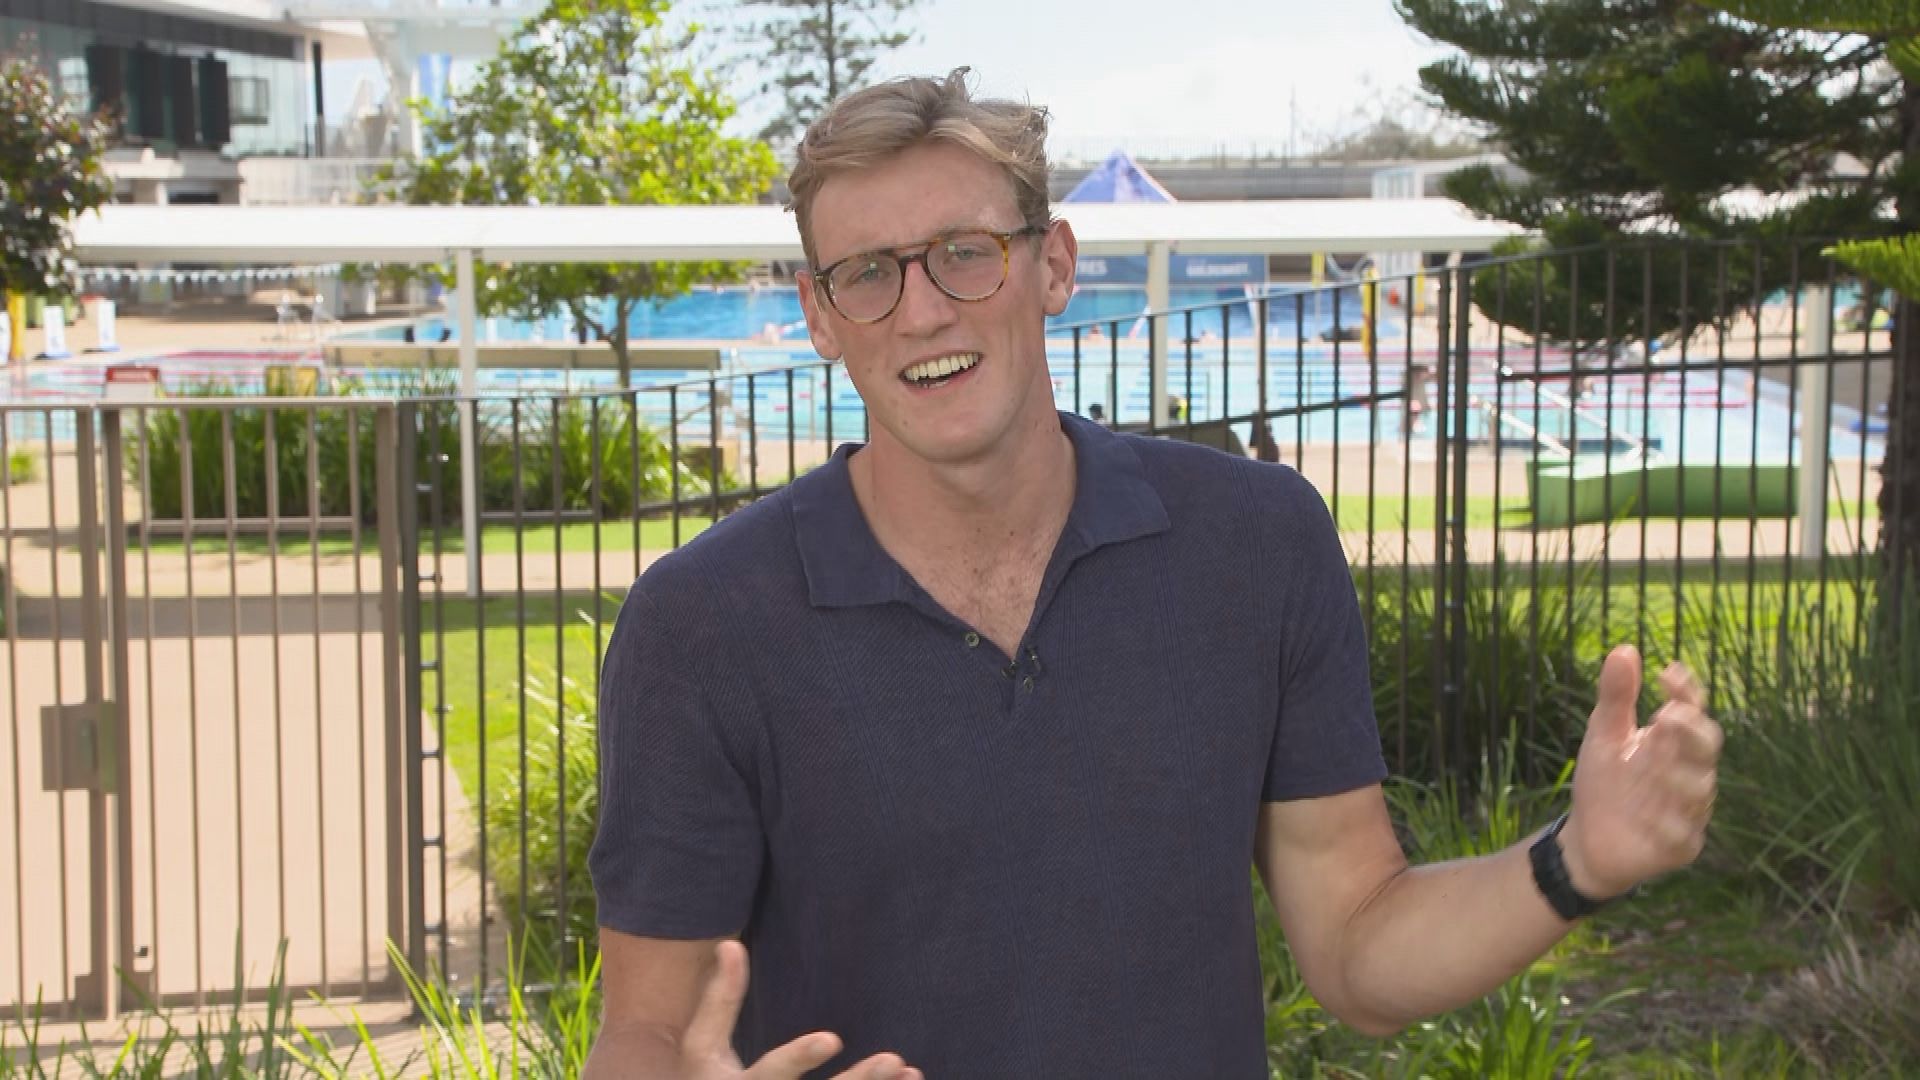 'A prodigious talent': Australian Olympic gold medal-winning swimmer Mack Horton retires